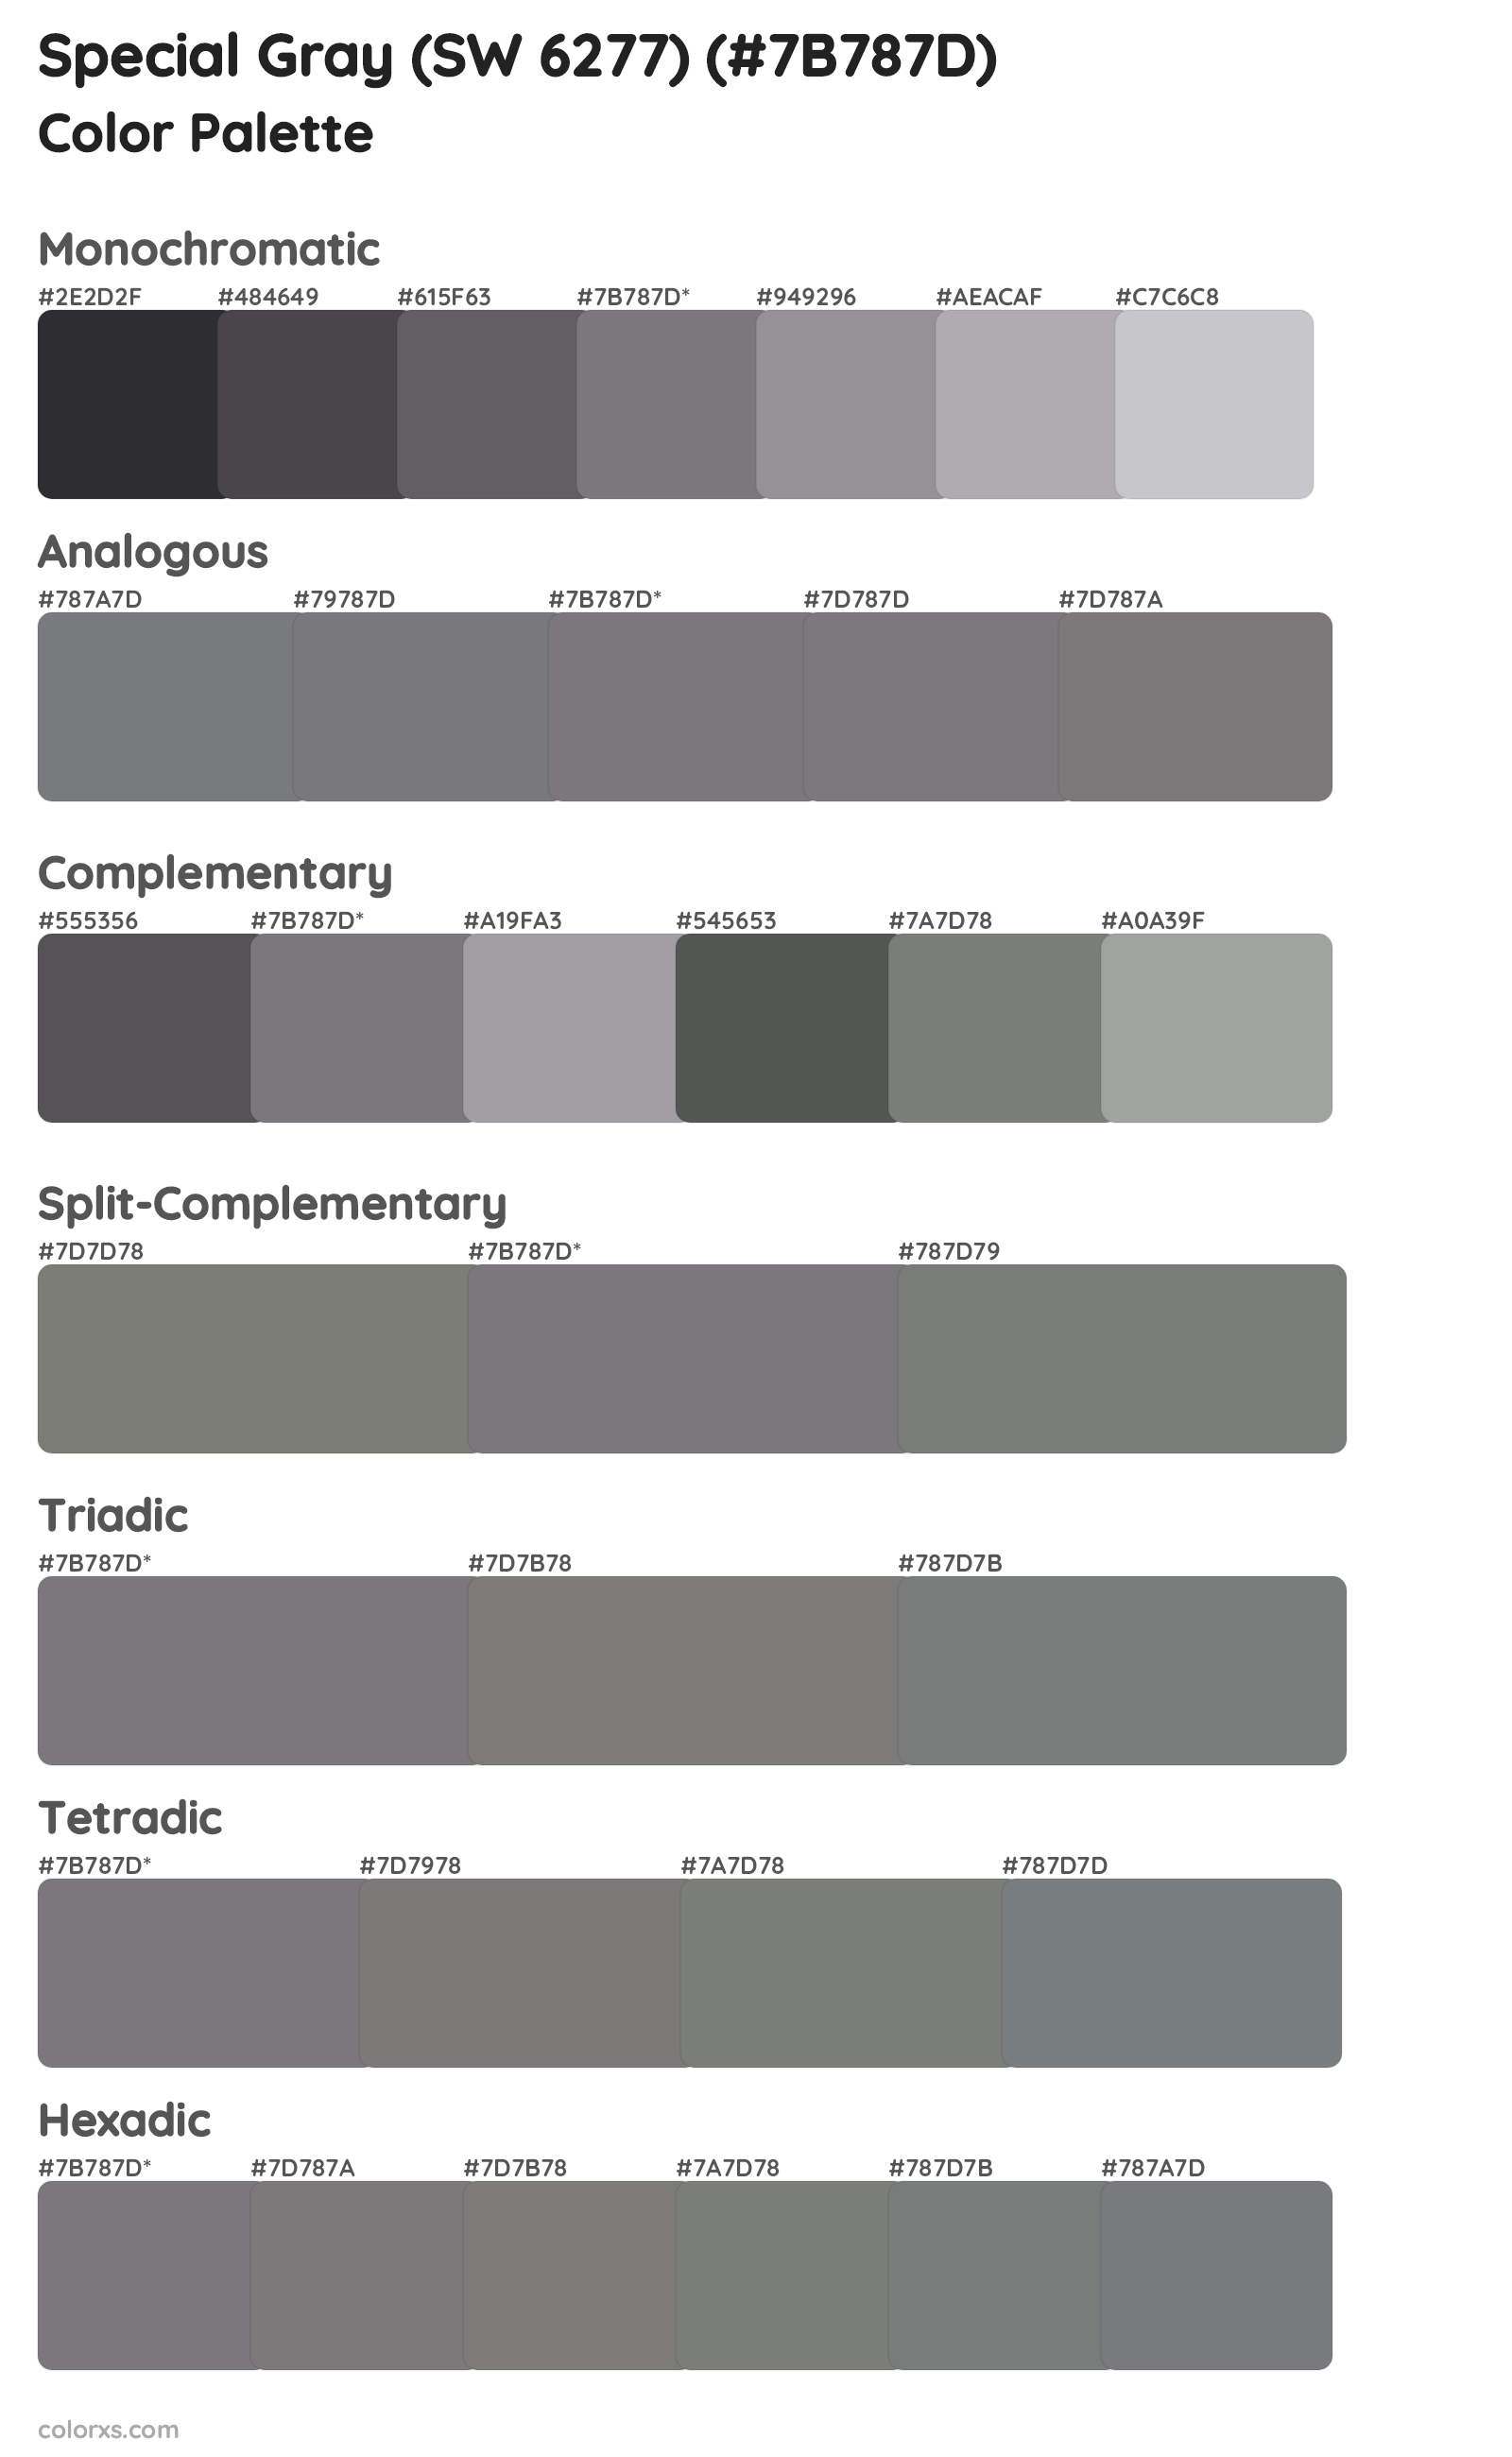 Special Gray (SW 6277) Color Scheme Palettes